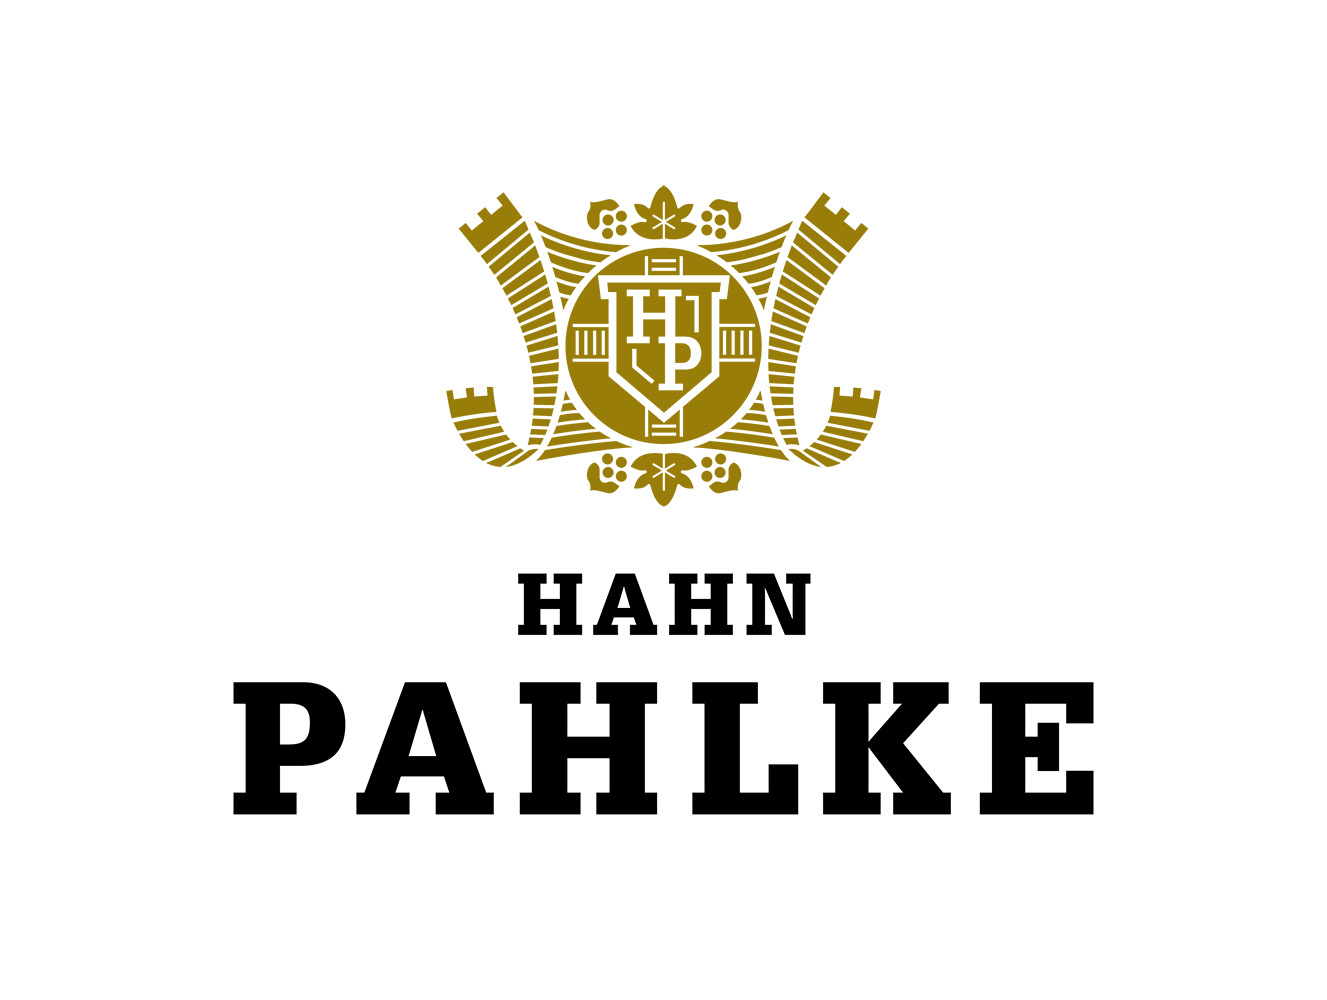 Der Link führt auf die Website des Weinguts Hahn-Pahlke